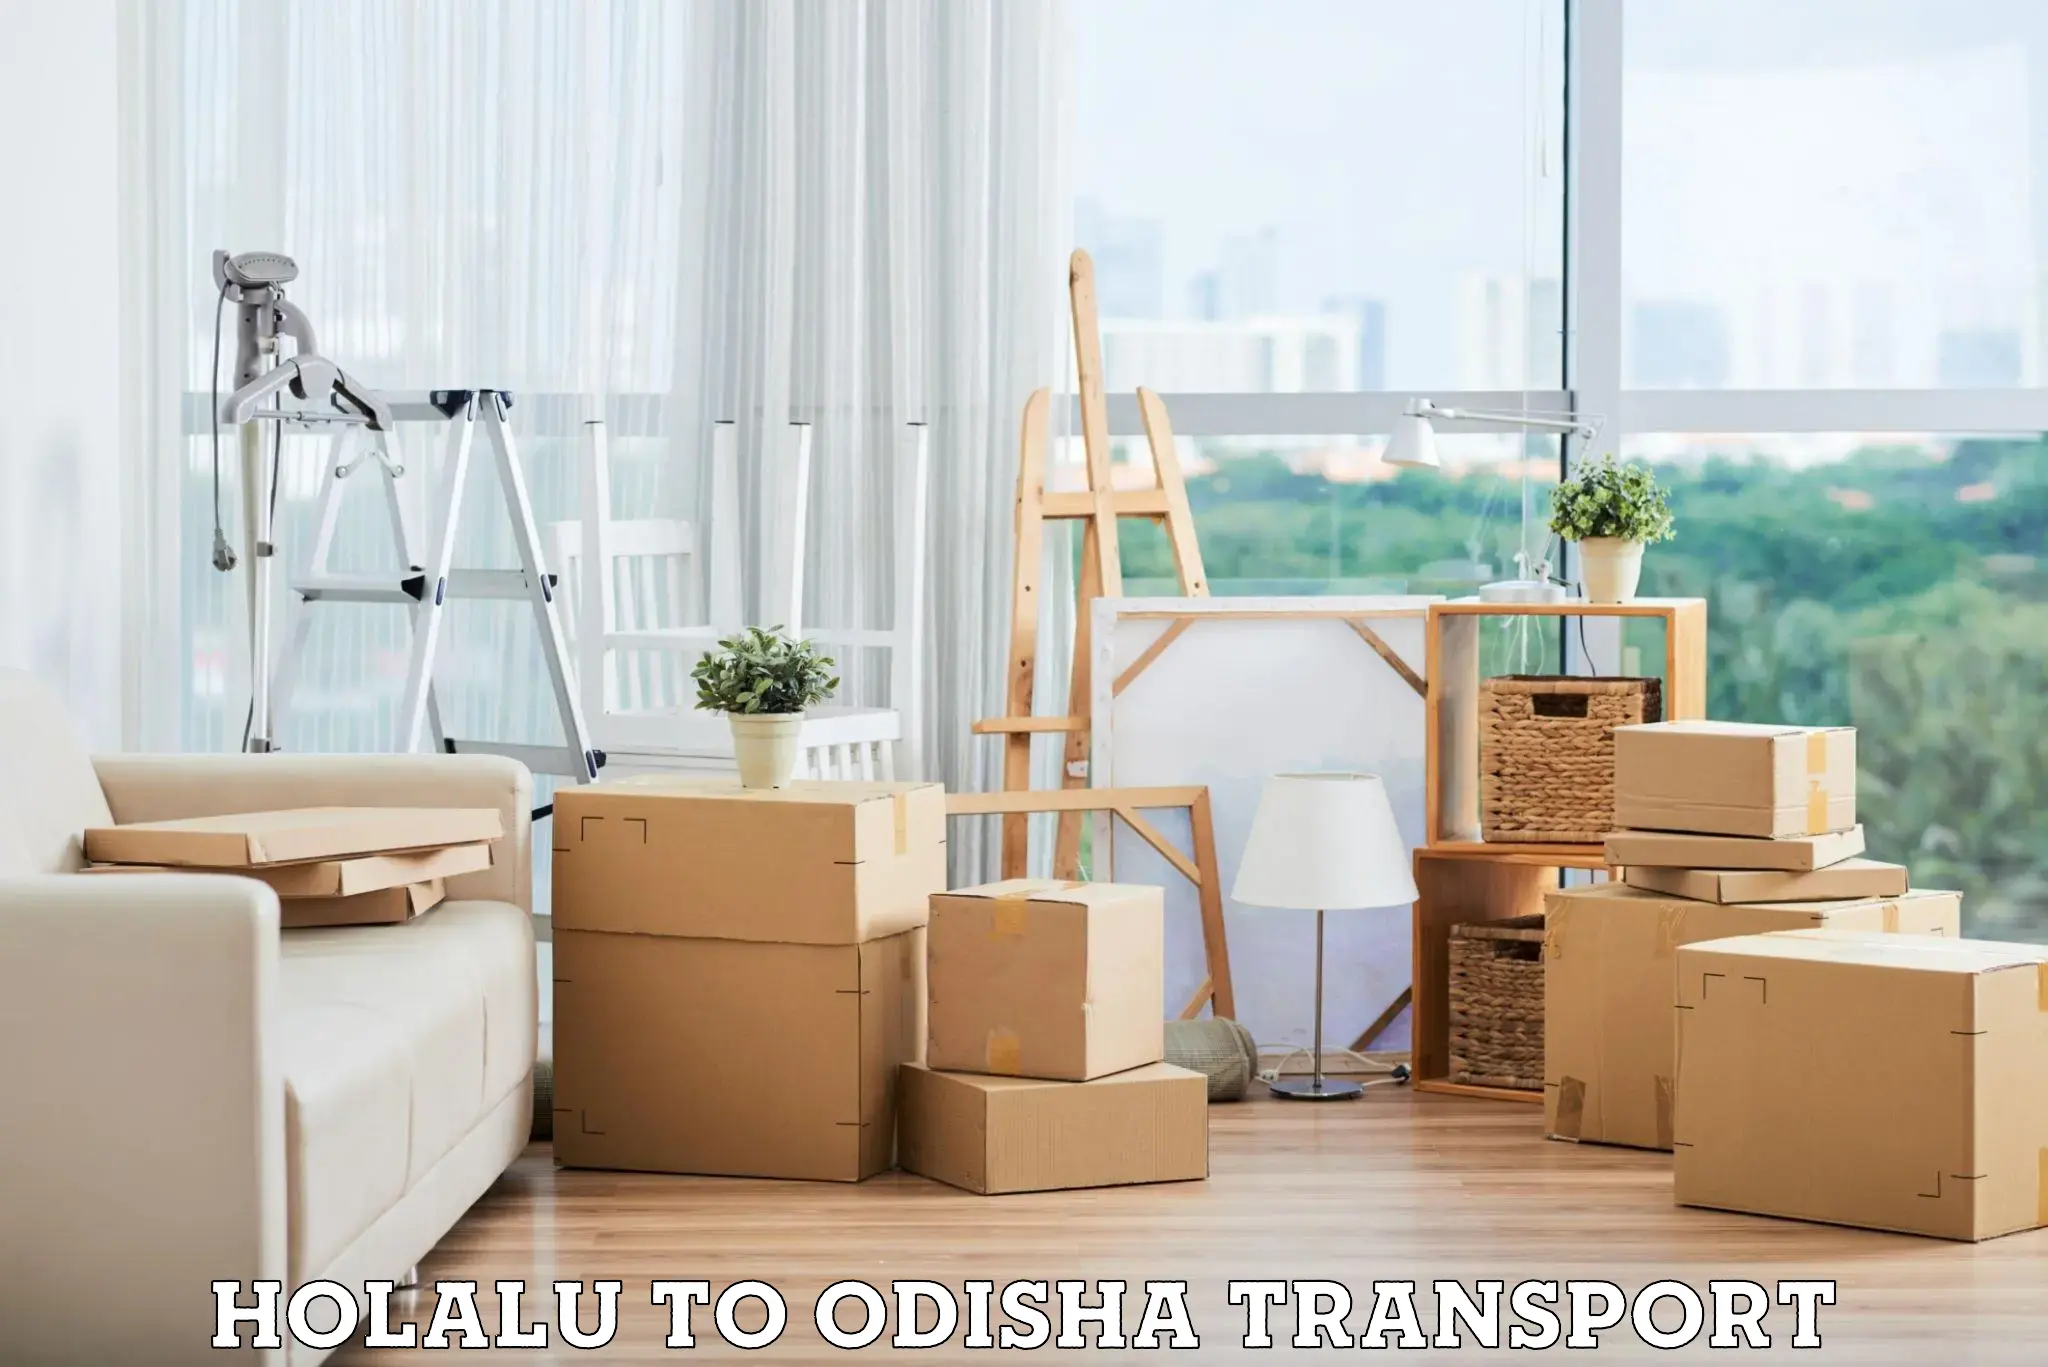 Furniture transport service Holalu to Babujang